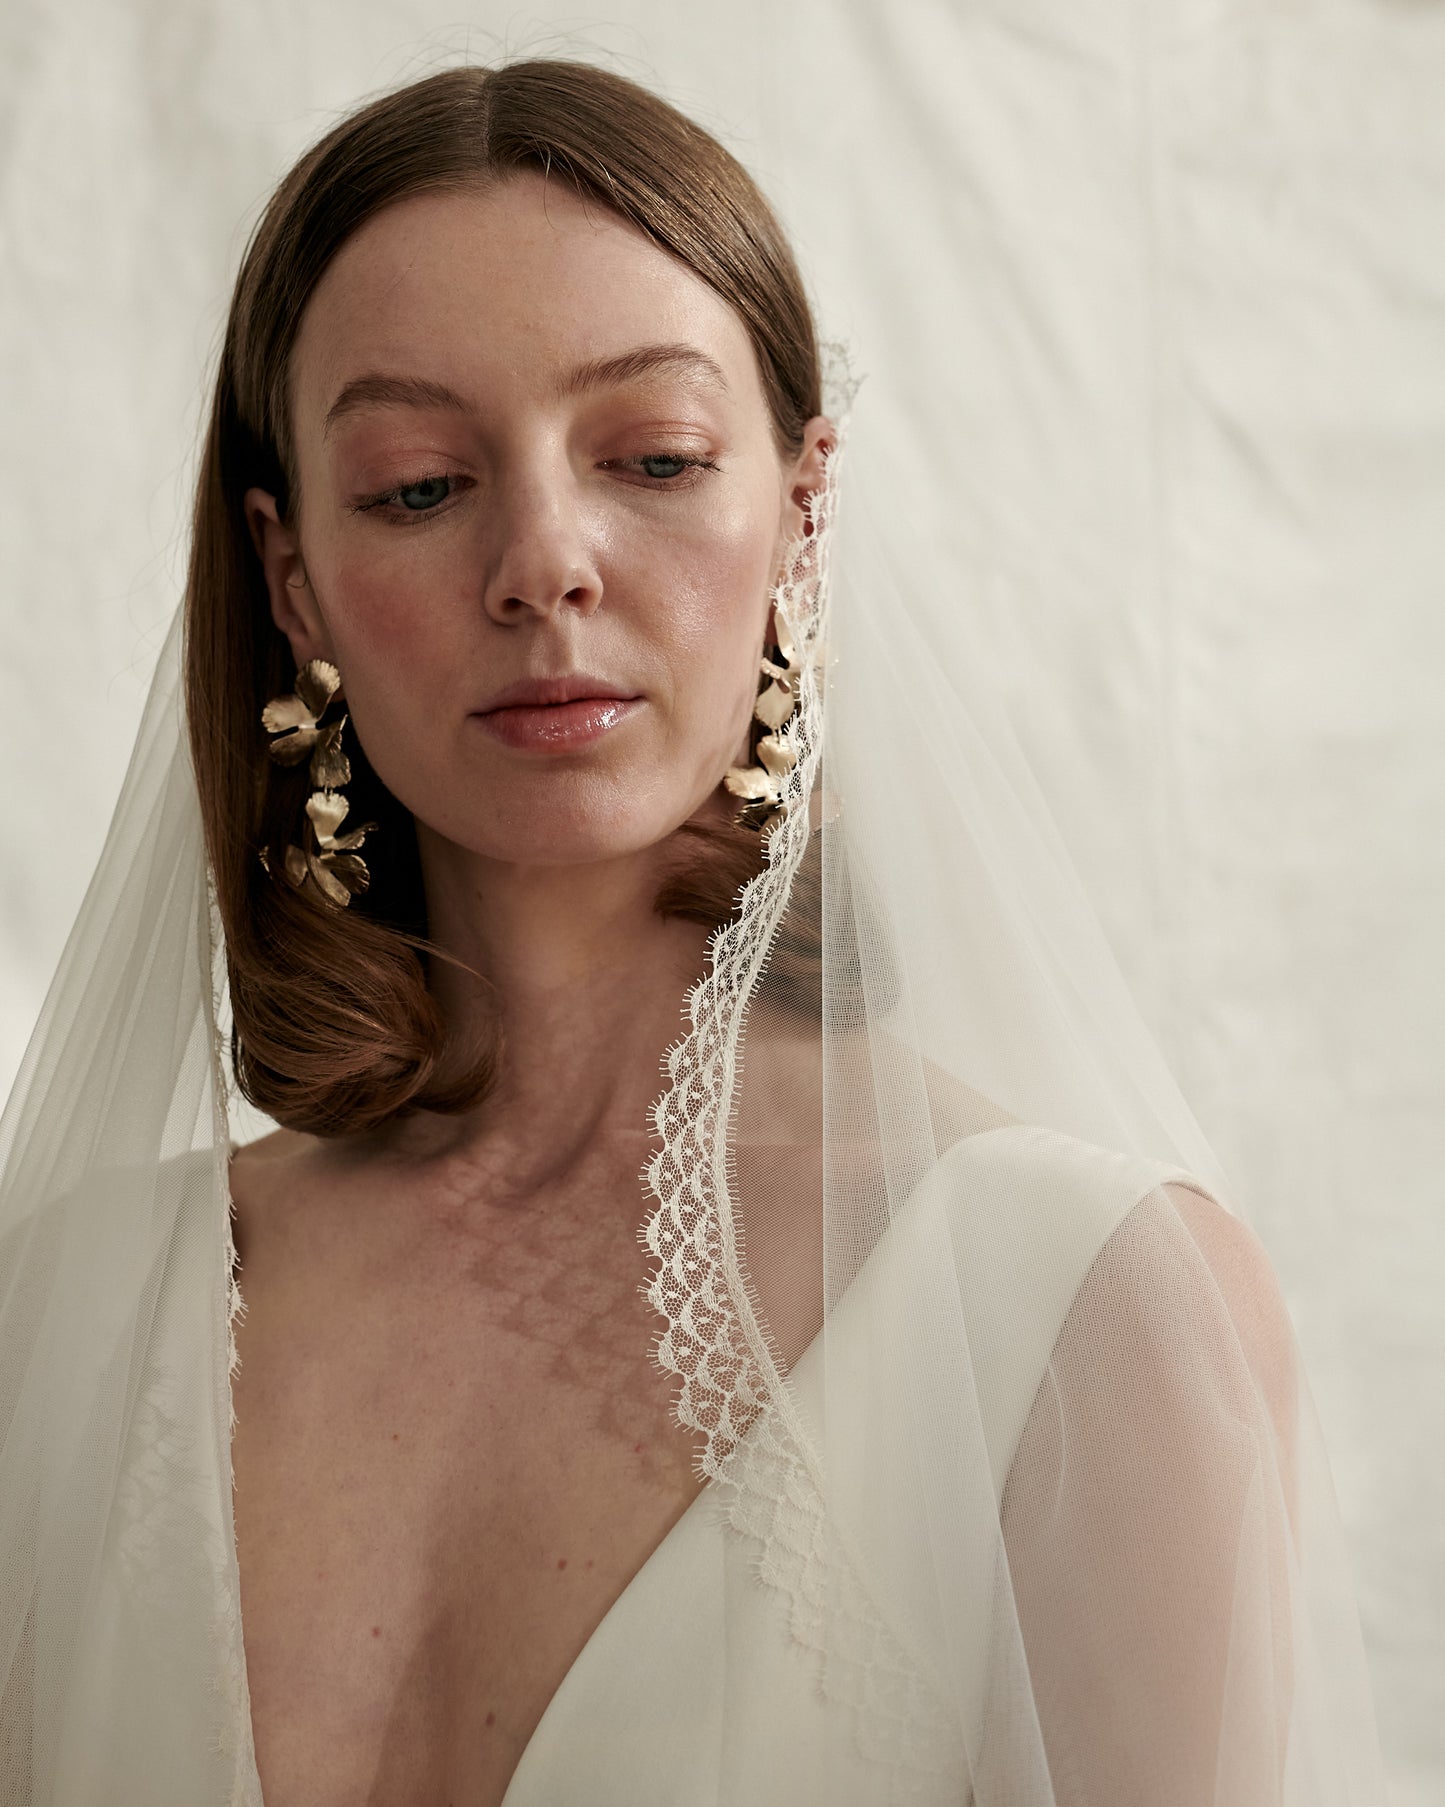 Long veil with lace trim